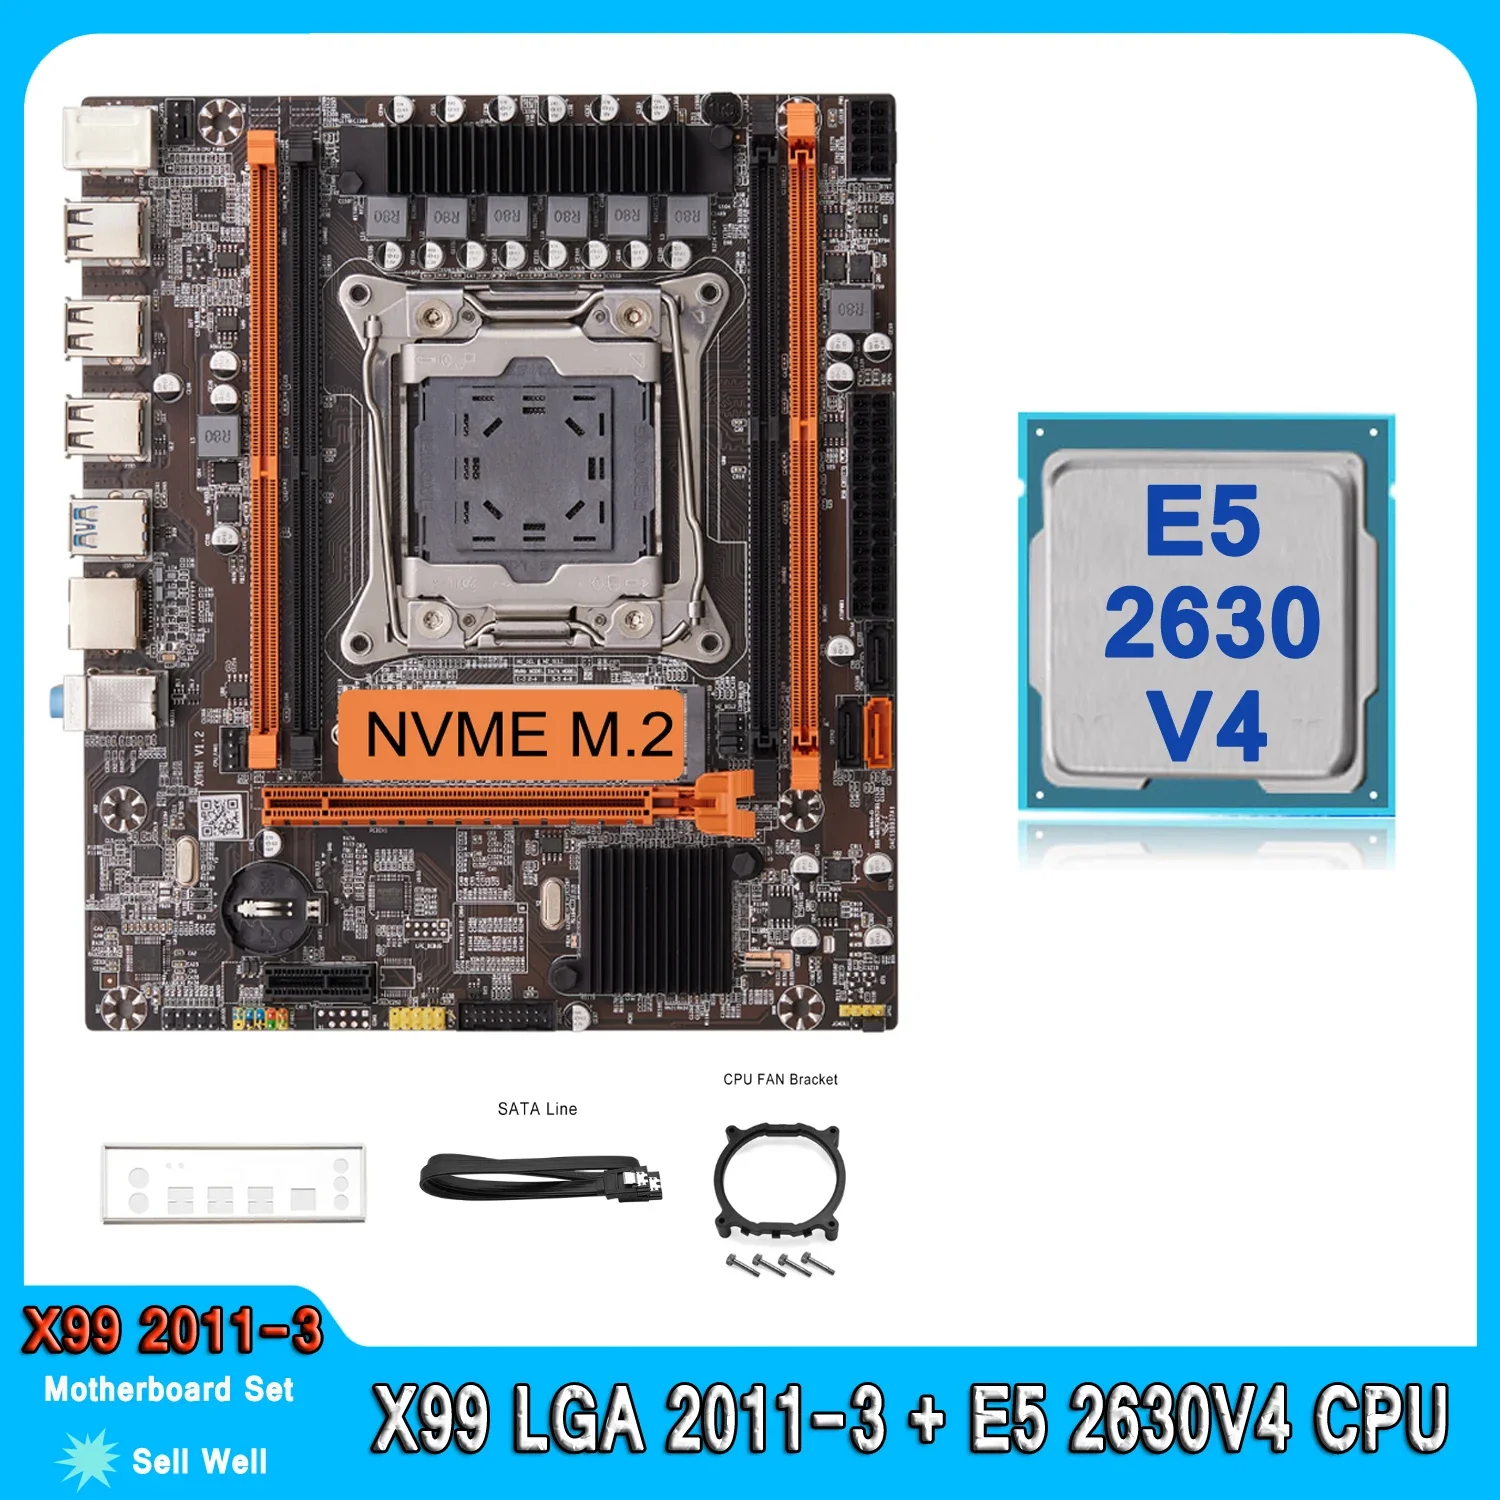 

Набор для материнской платы X99, комплект для процессора Xeon E5 2630 V4 LGA 2011-3, поддержка процессора DDR4 RAM Memory NVME M.2 E5 2630V4, материнская плата